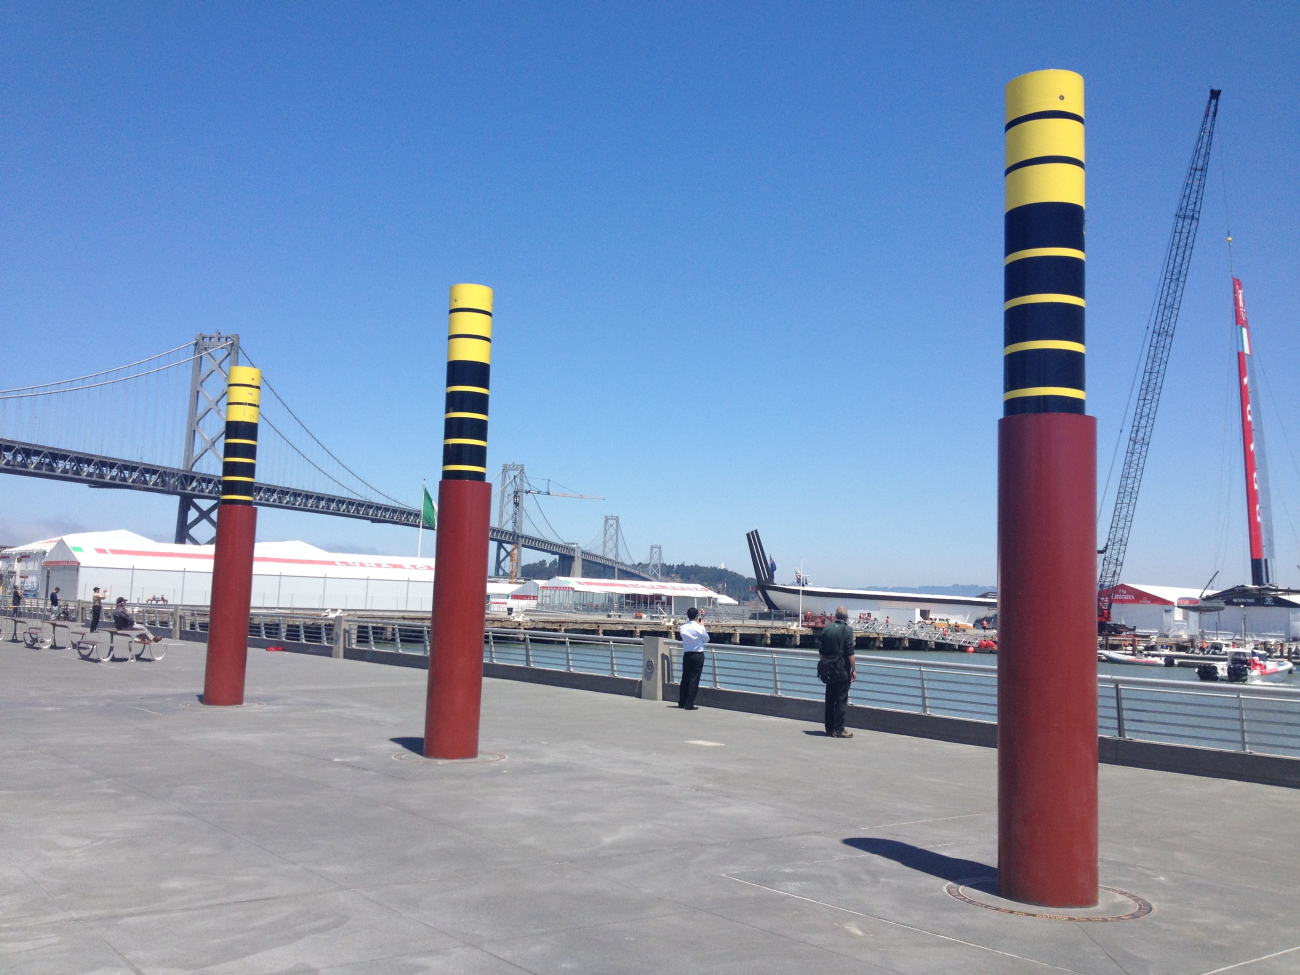 Tidal columns at Brannnan Street Wharf